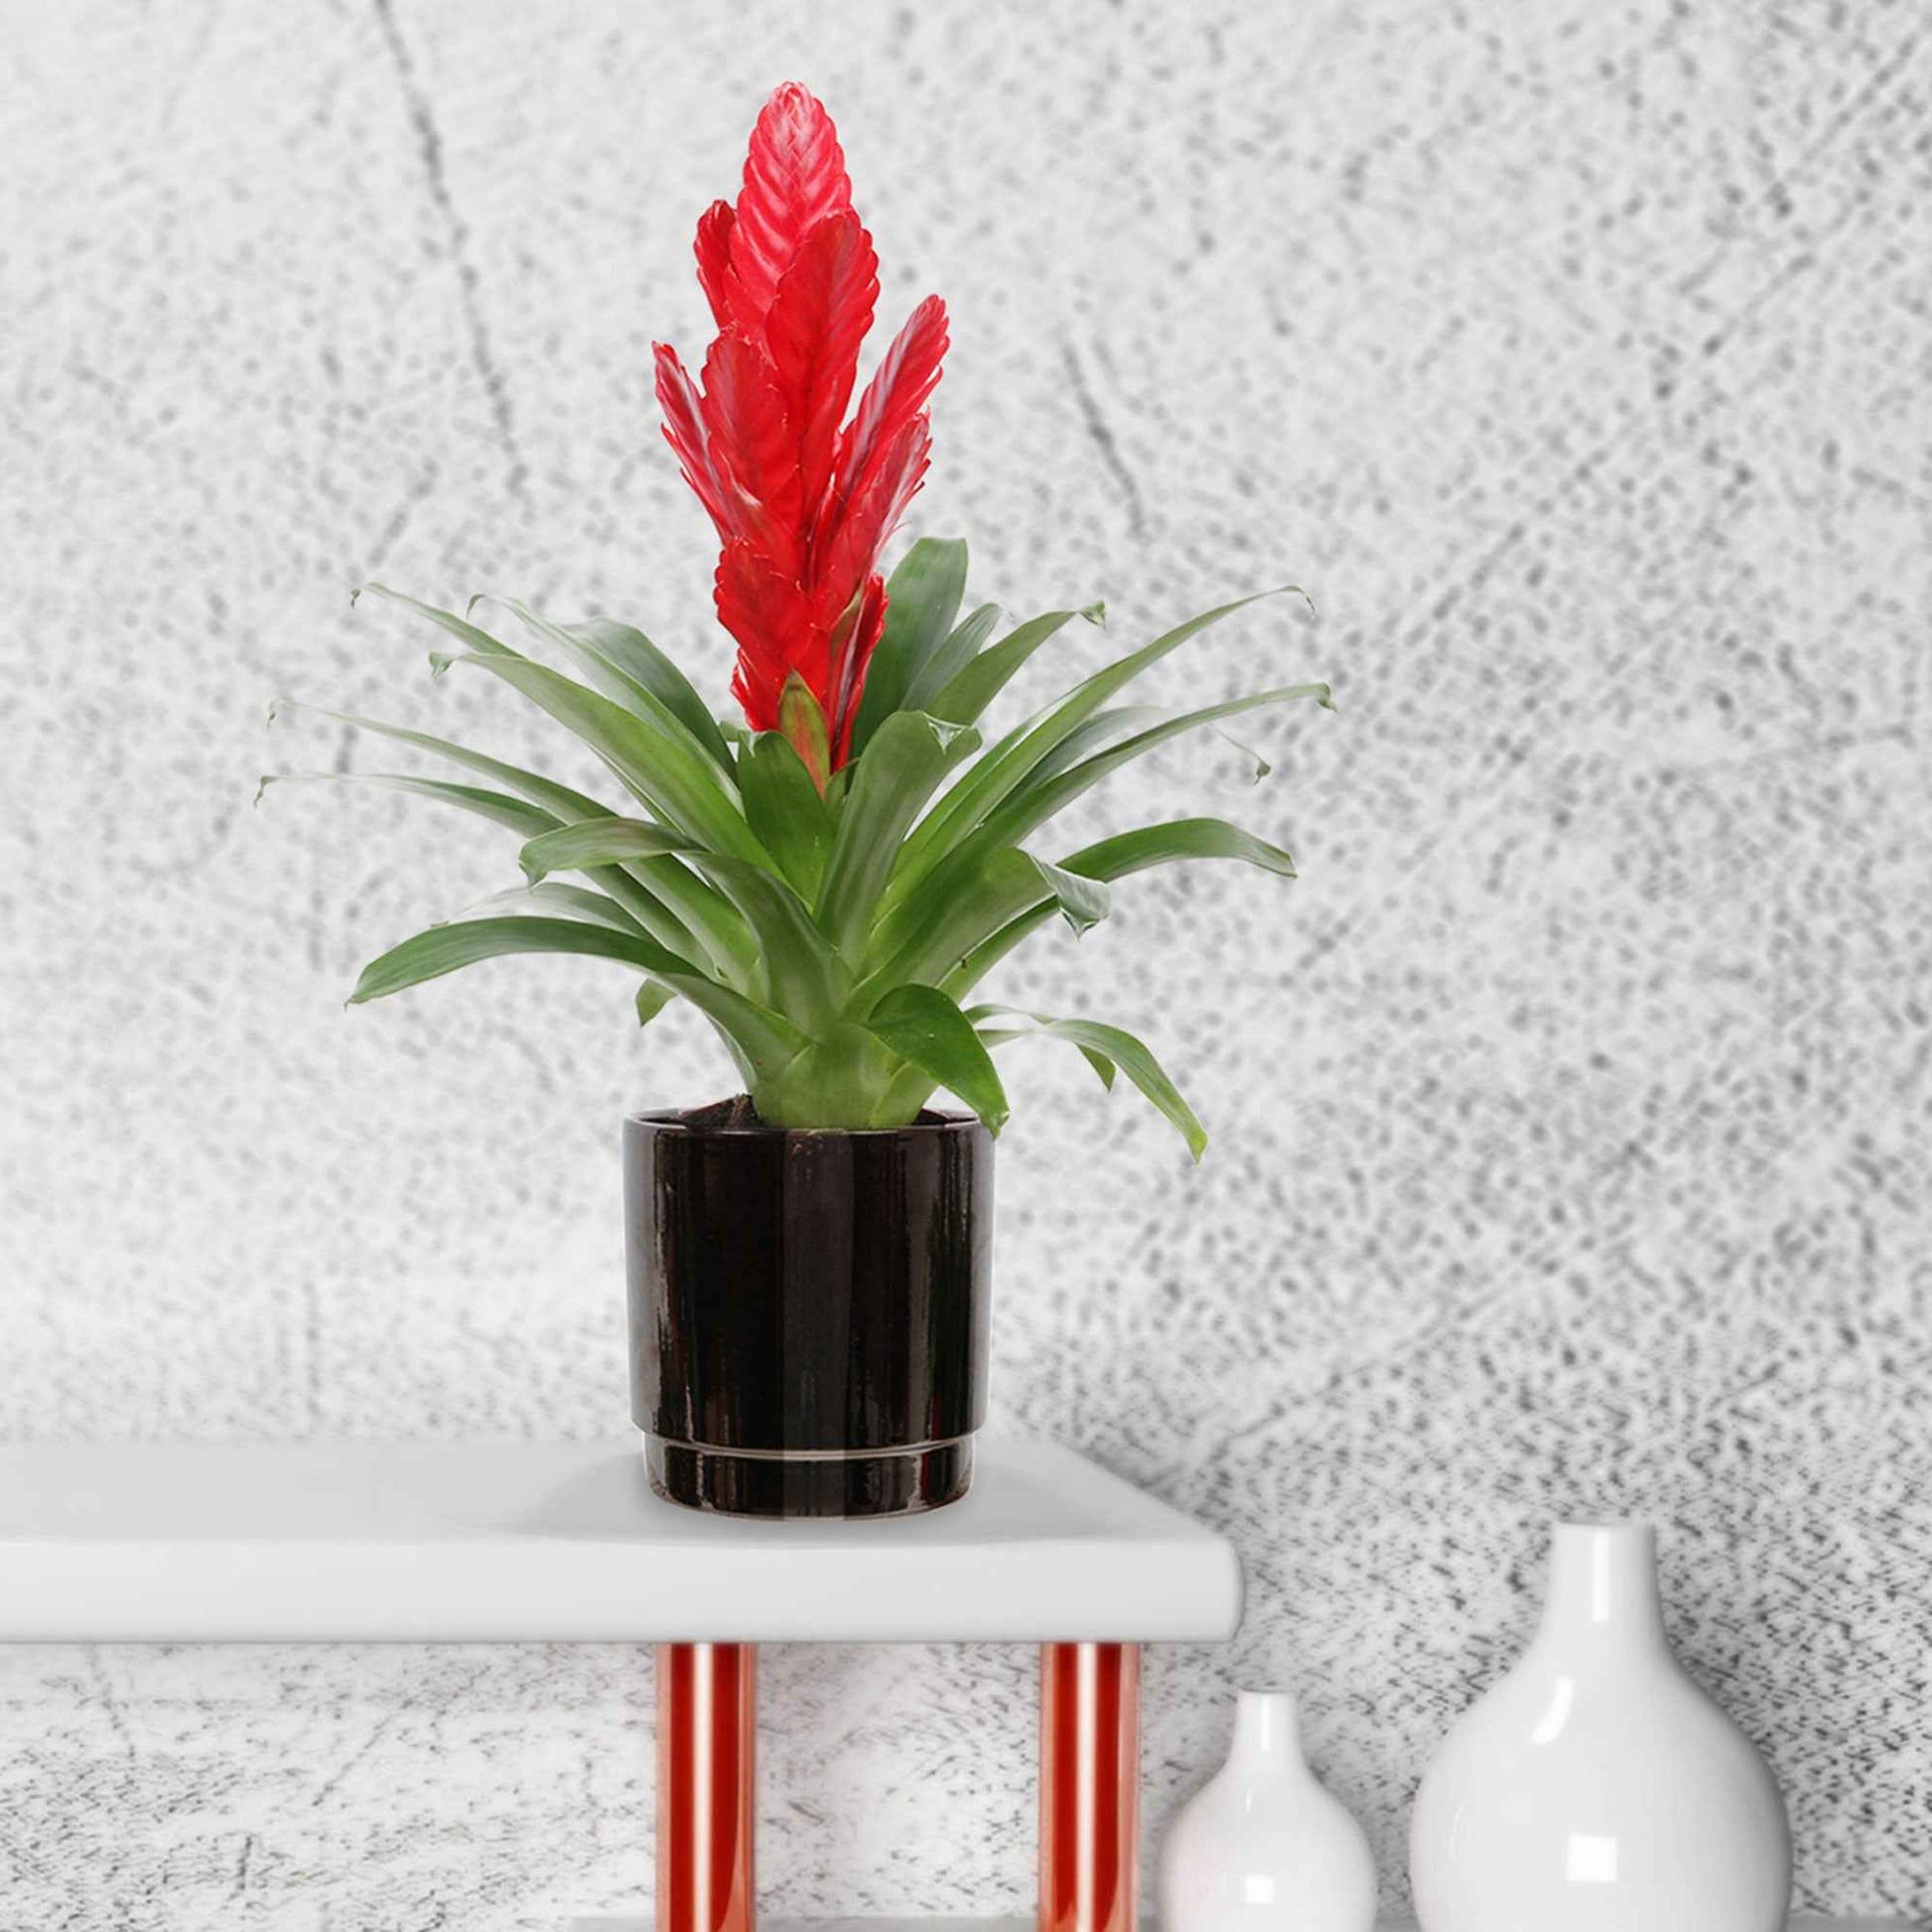 2 Bromelie Vriesea 'Stream' Rot - Blühende Zimmerpflanzen